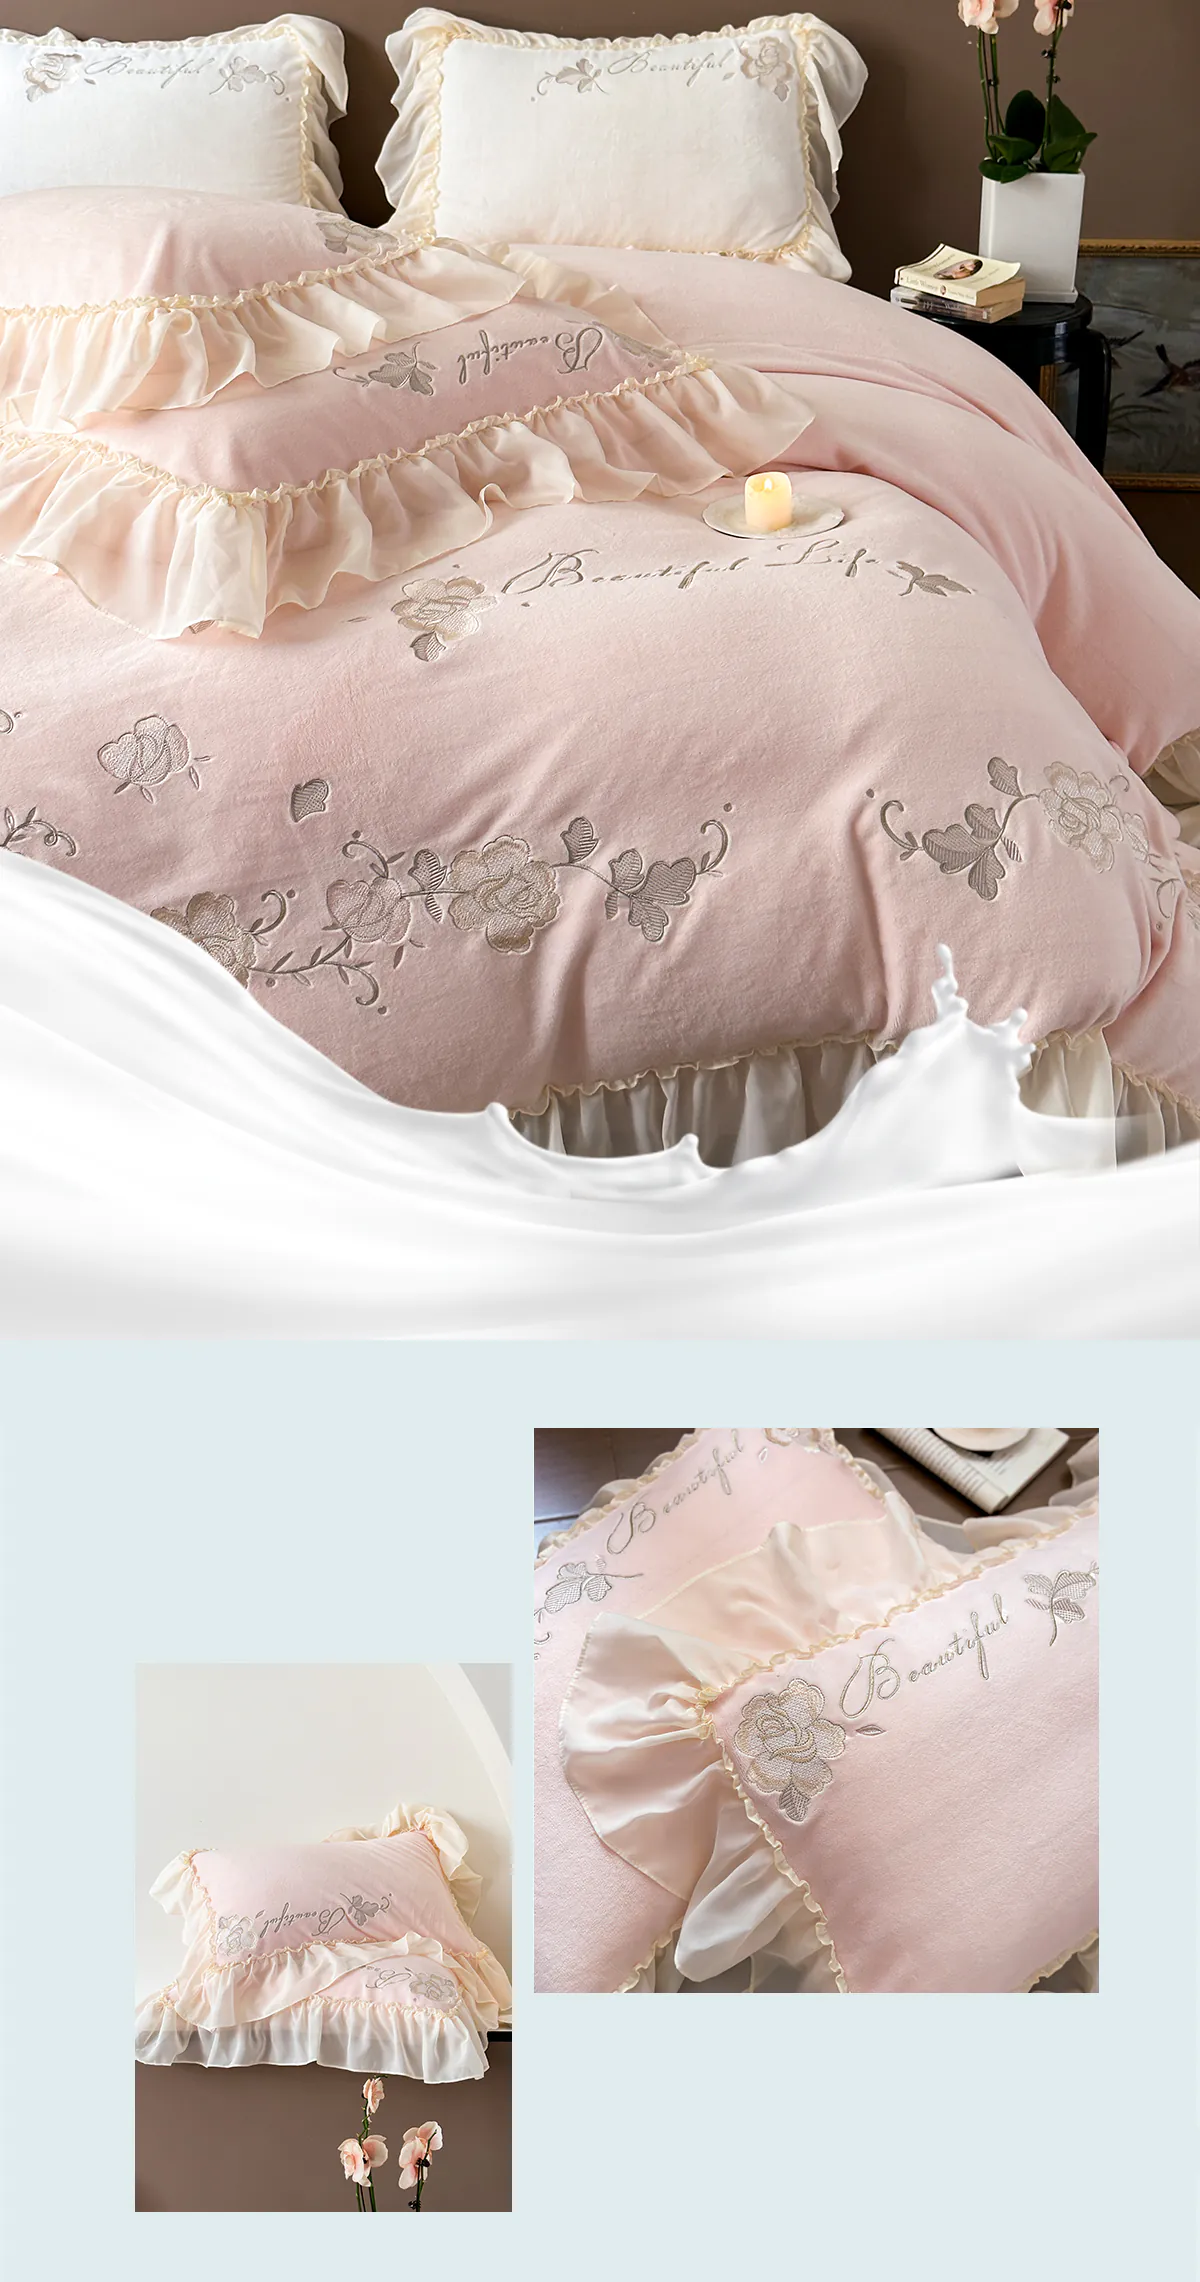 Aesthetic-Soft-Milk-Fiber-Duvet-Cover-Bed-Sheet-Pillowcases-4-Pcs-Set12